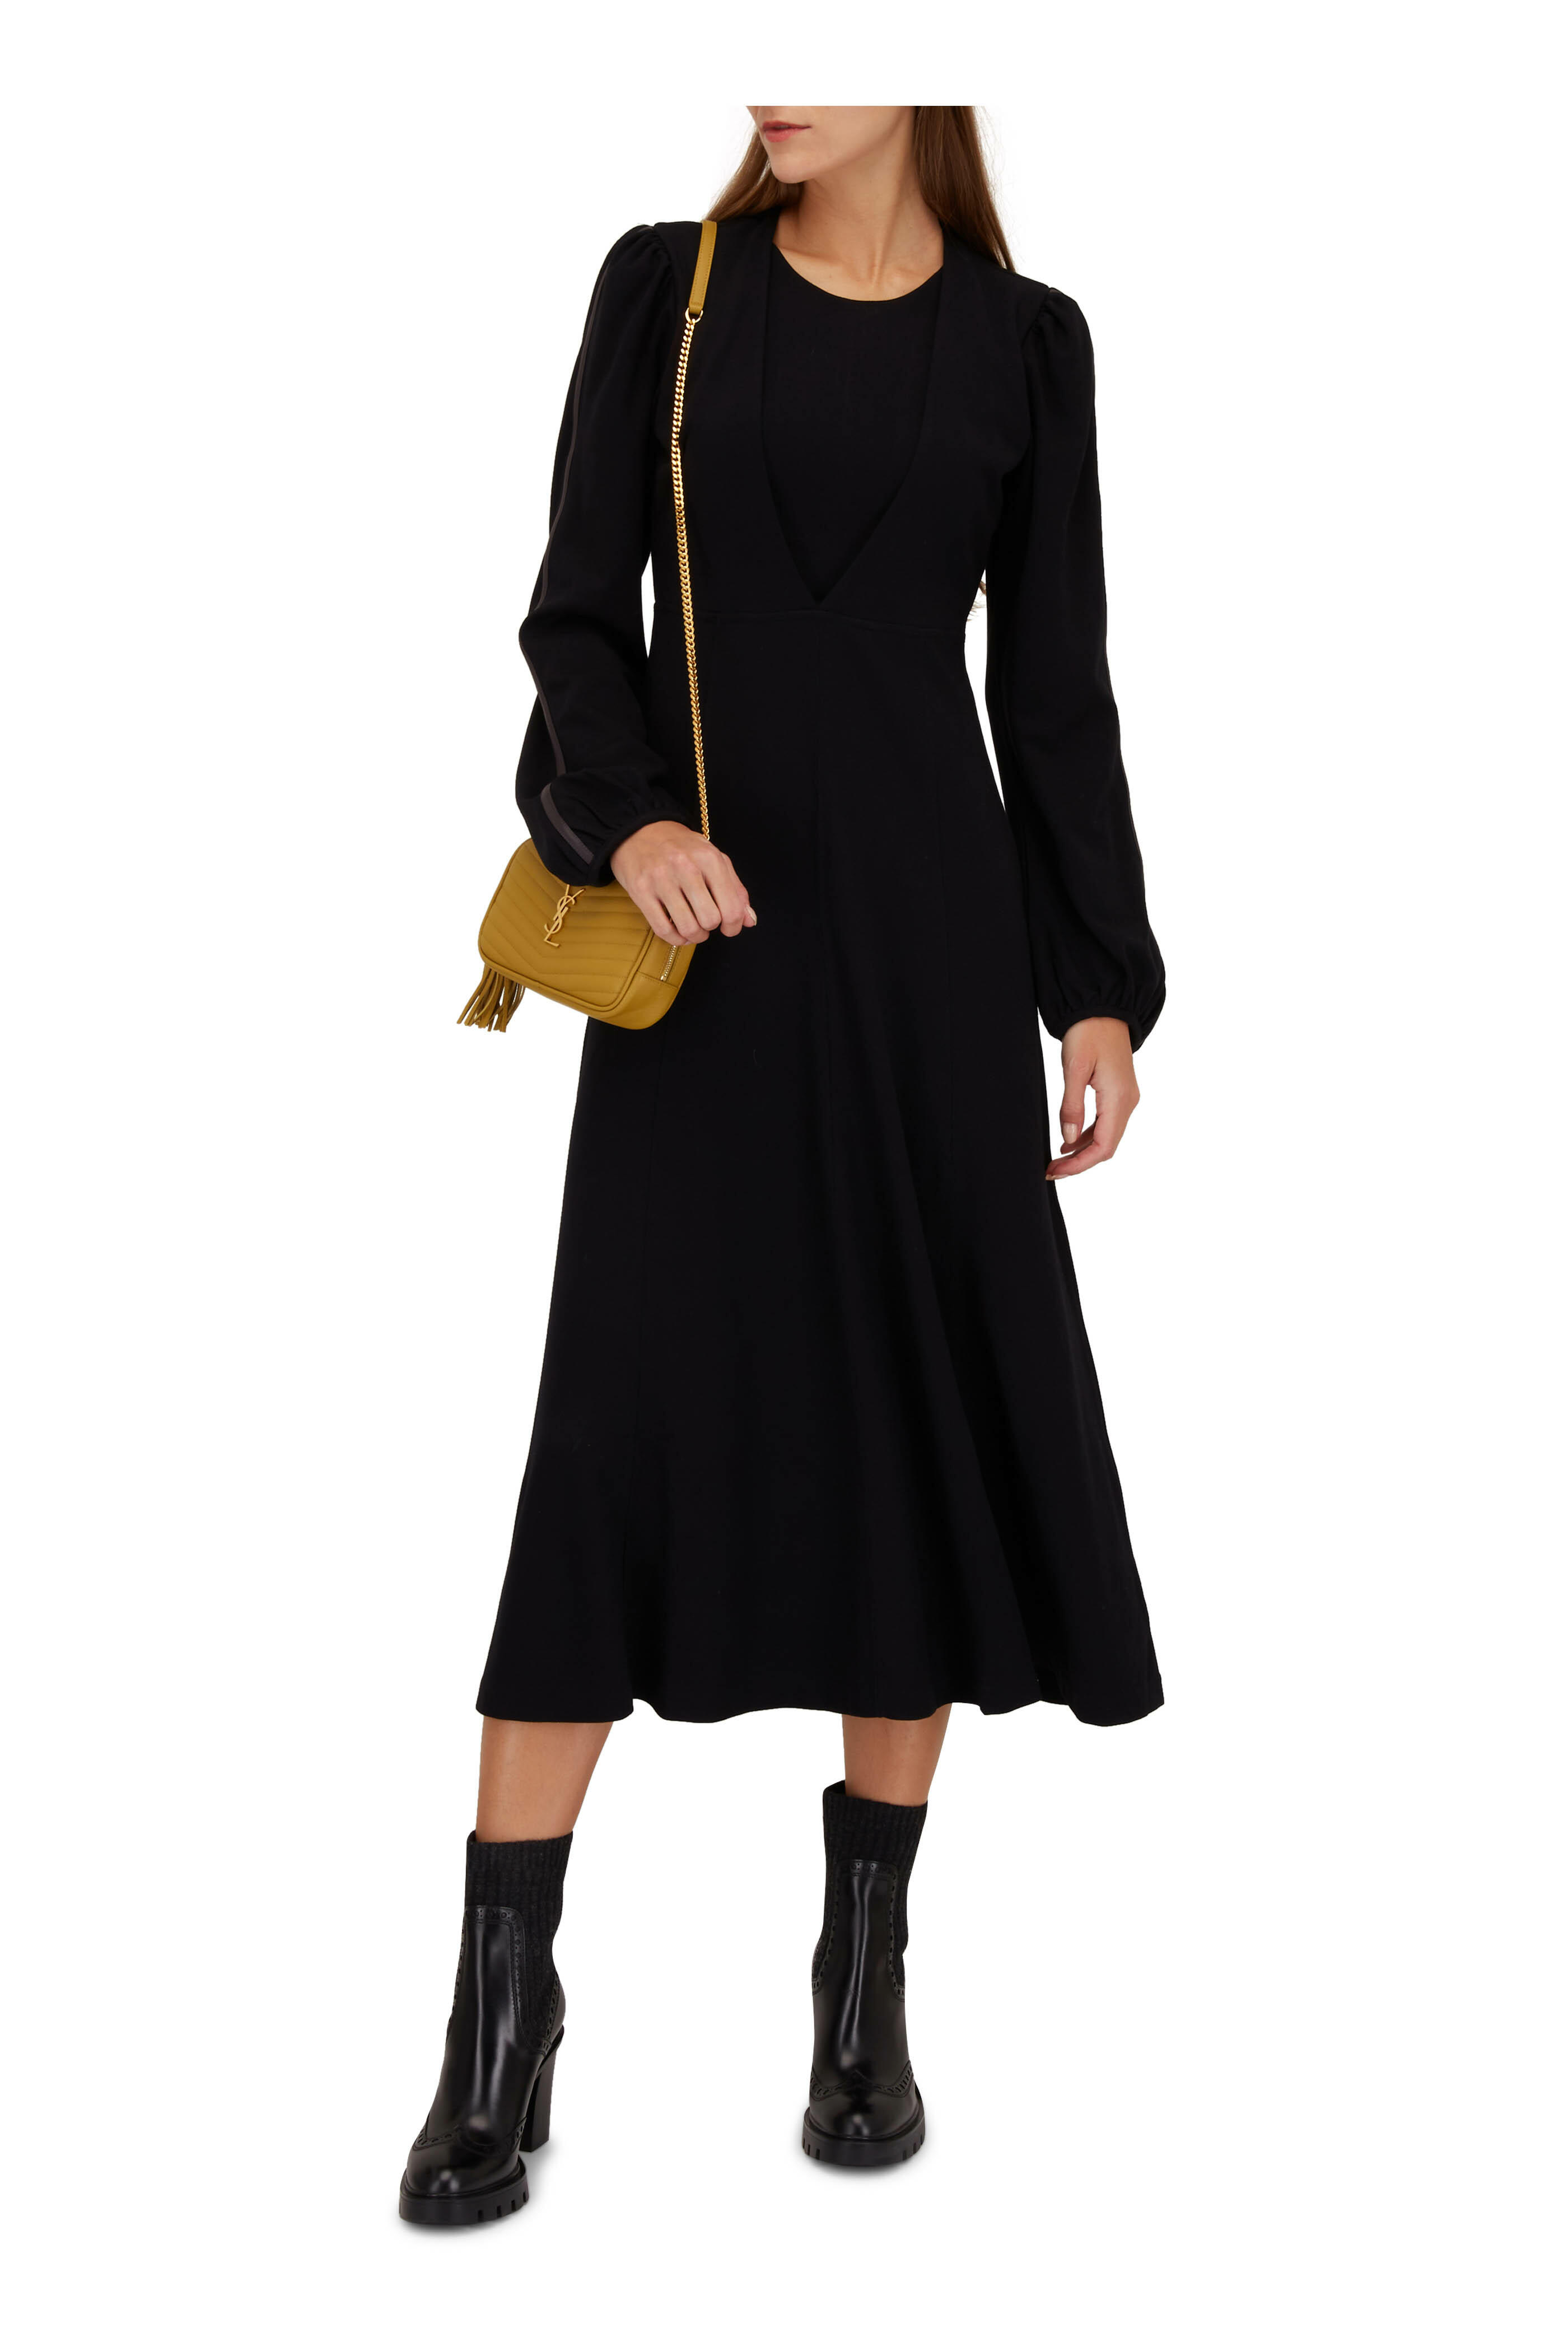 Dorothee Schumacher - City Allure Black Dress | Mitchell Stores